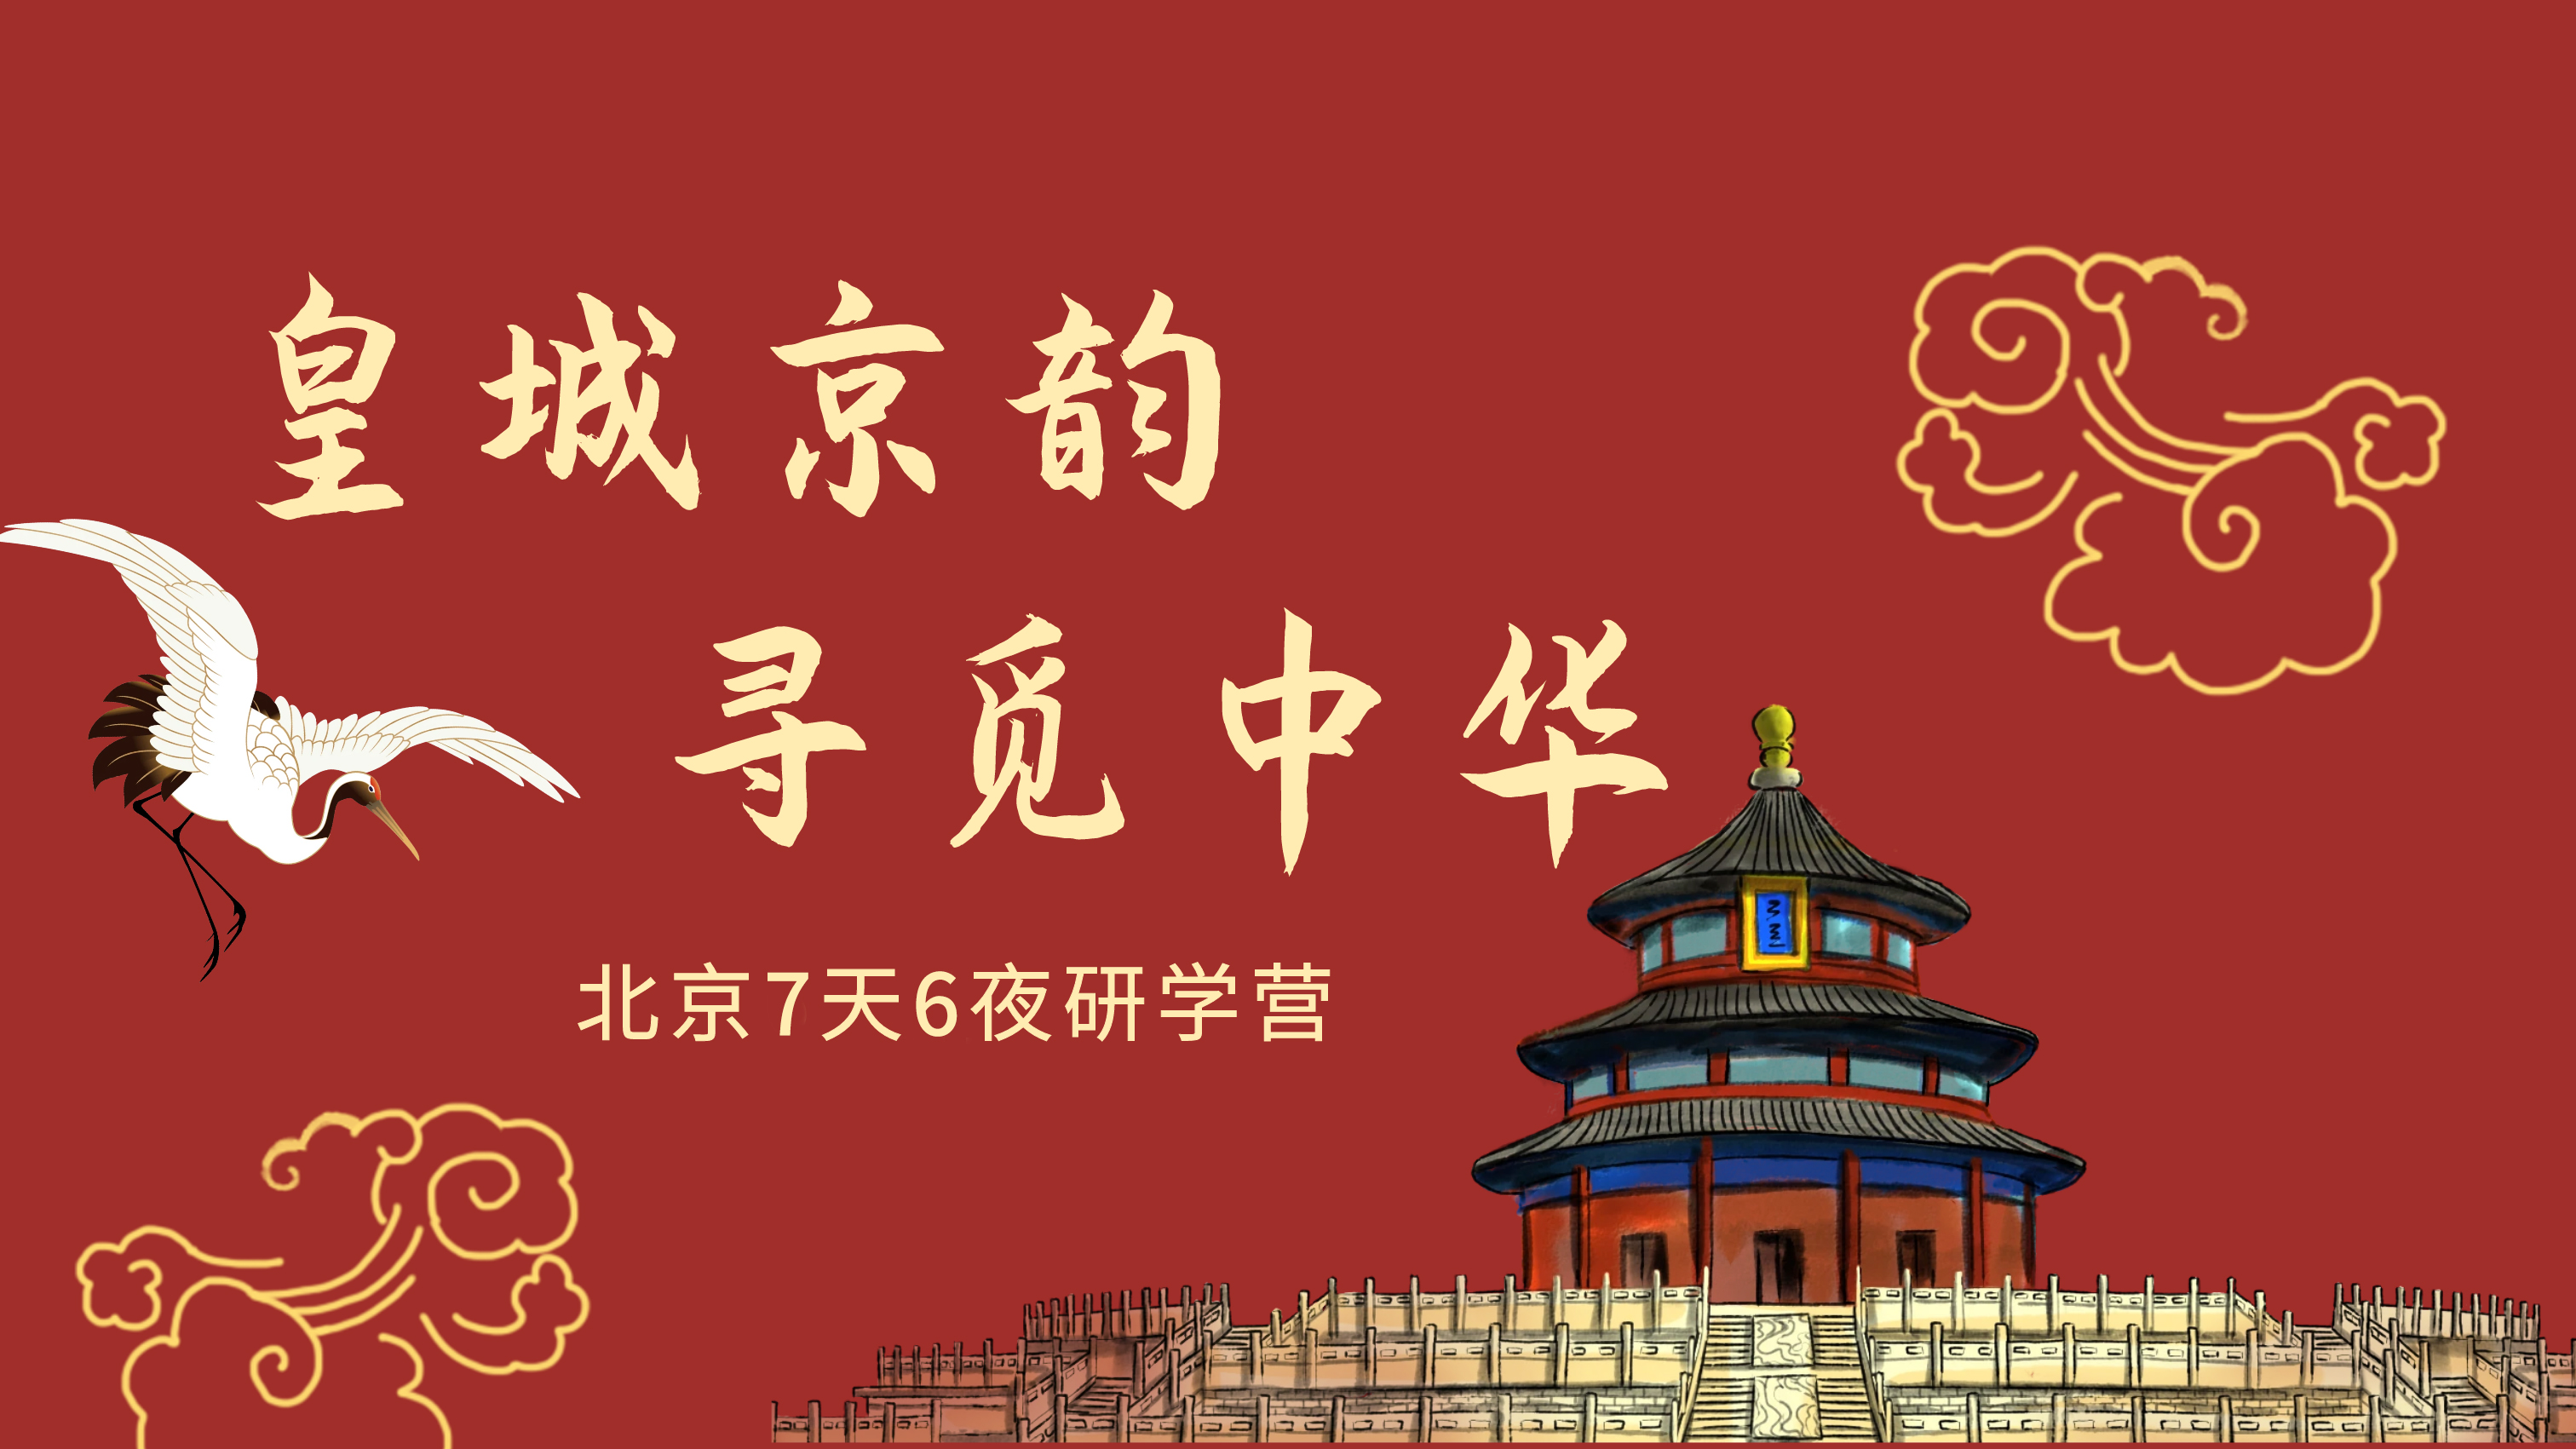 北京7天6夜历史文化研学营 | 皇城京韵 · 寻觅中华